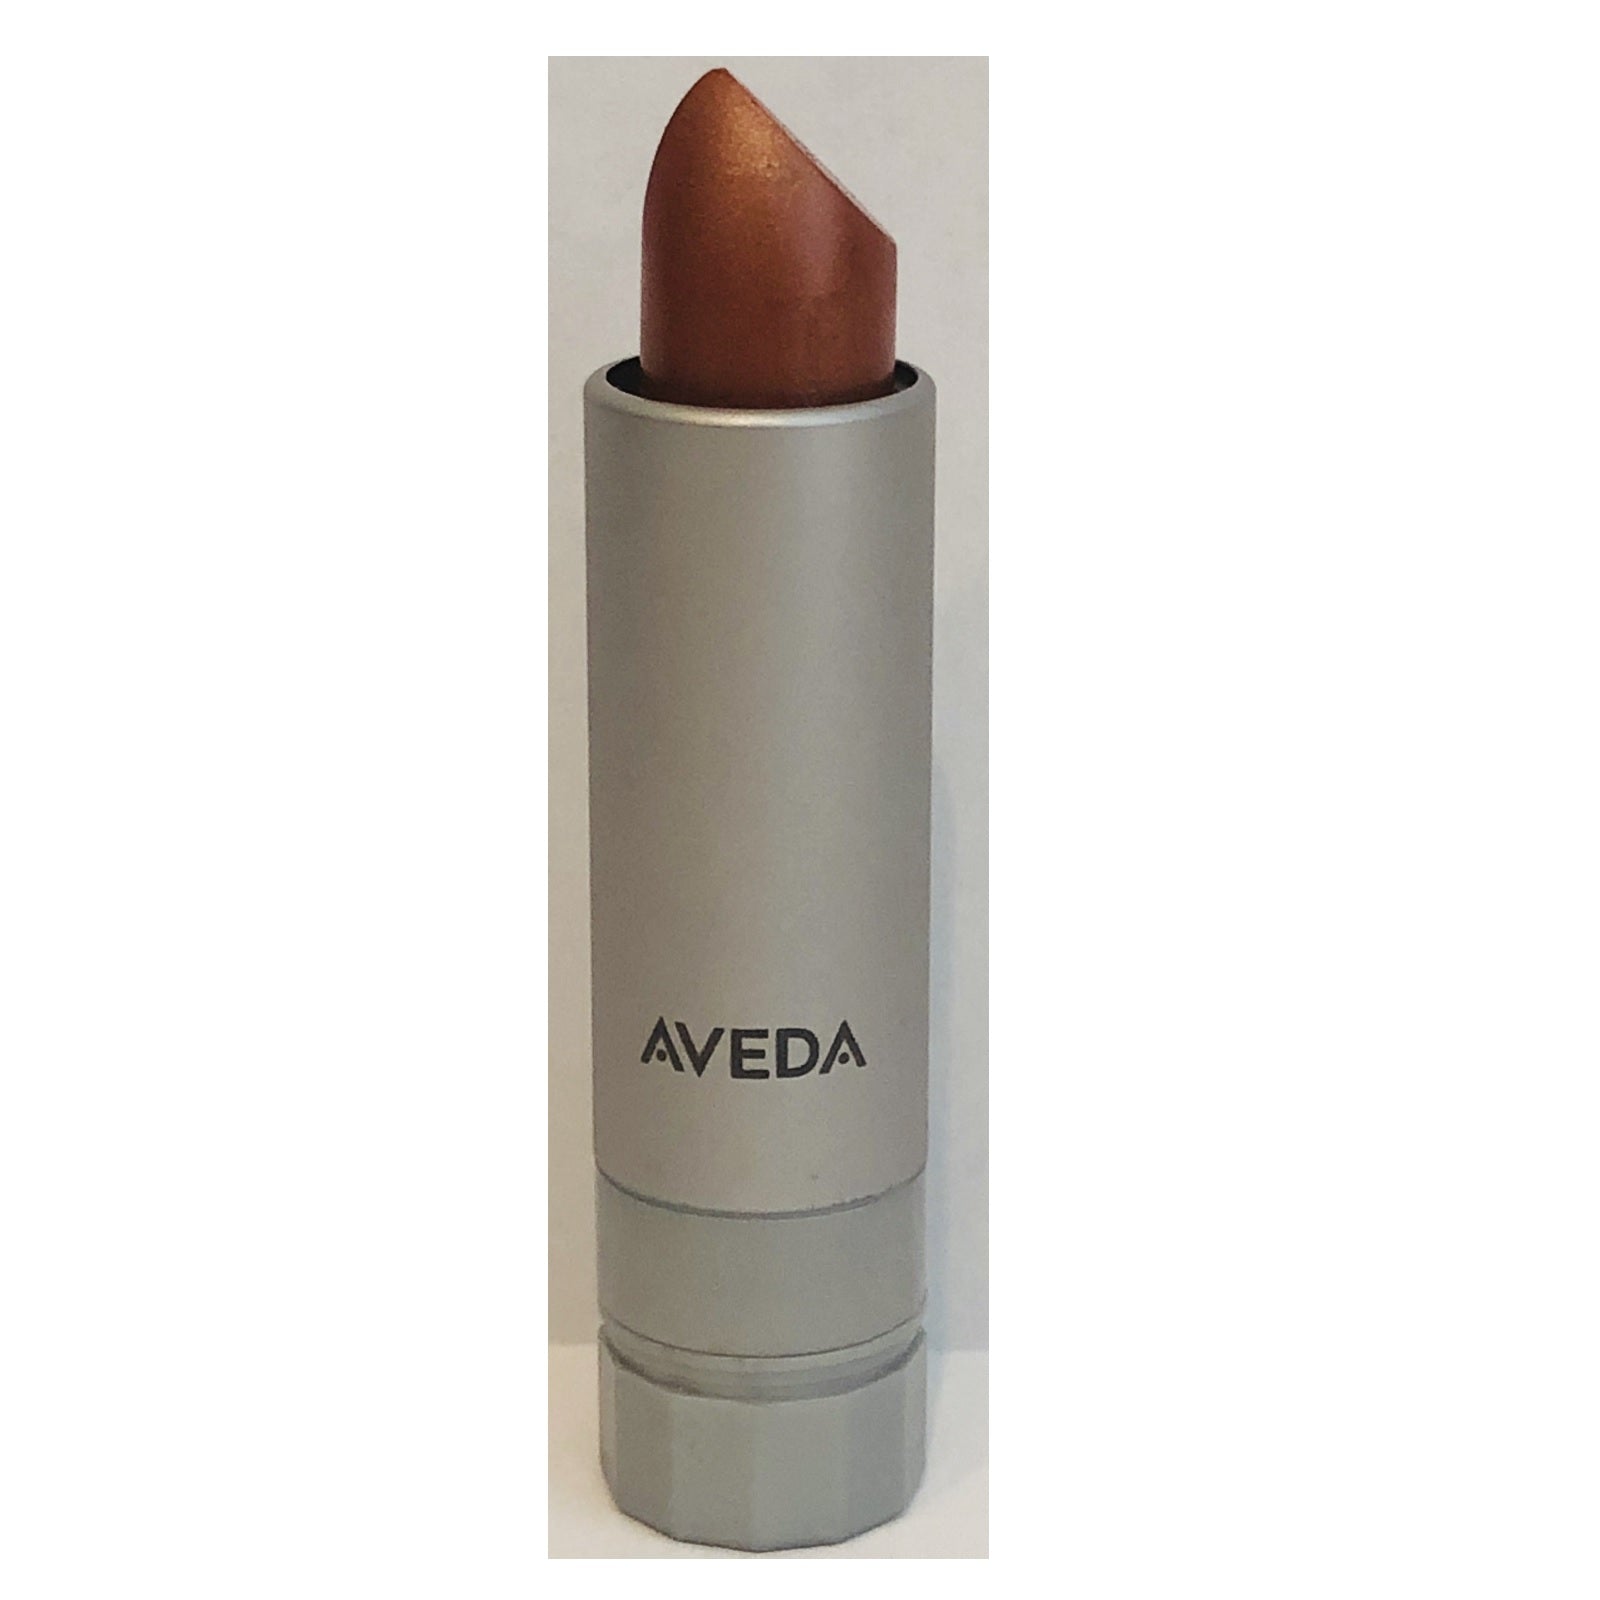 AVEDA new lipstick lip color Sun 220 Nourish-Mint discontinued